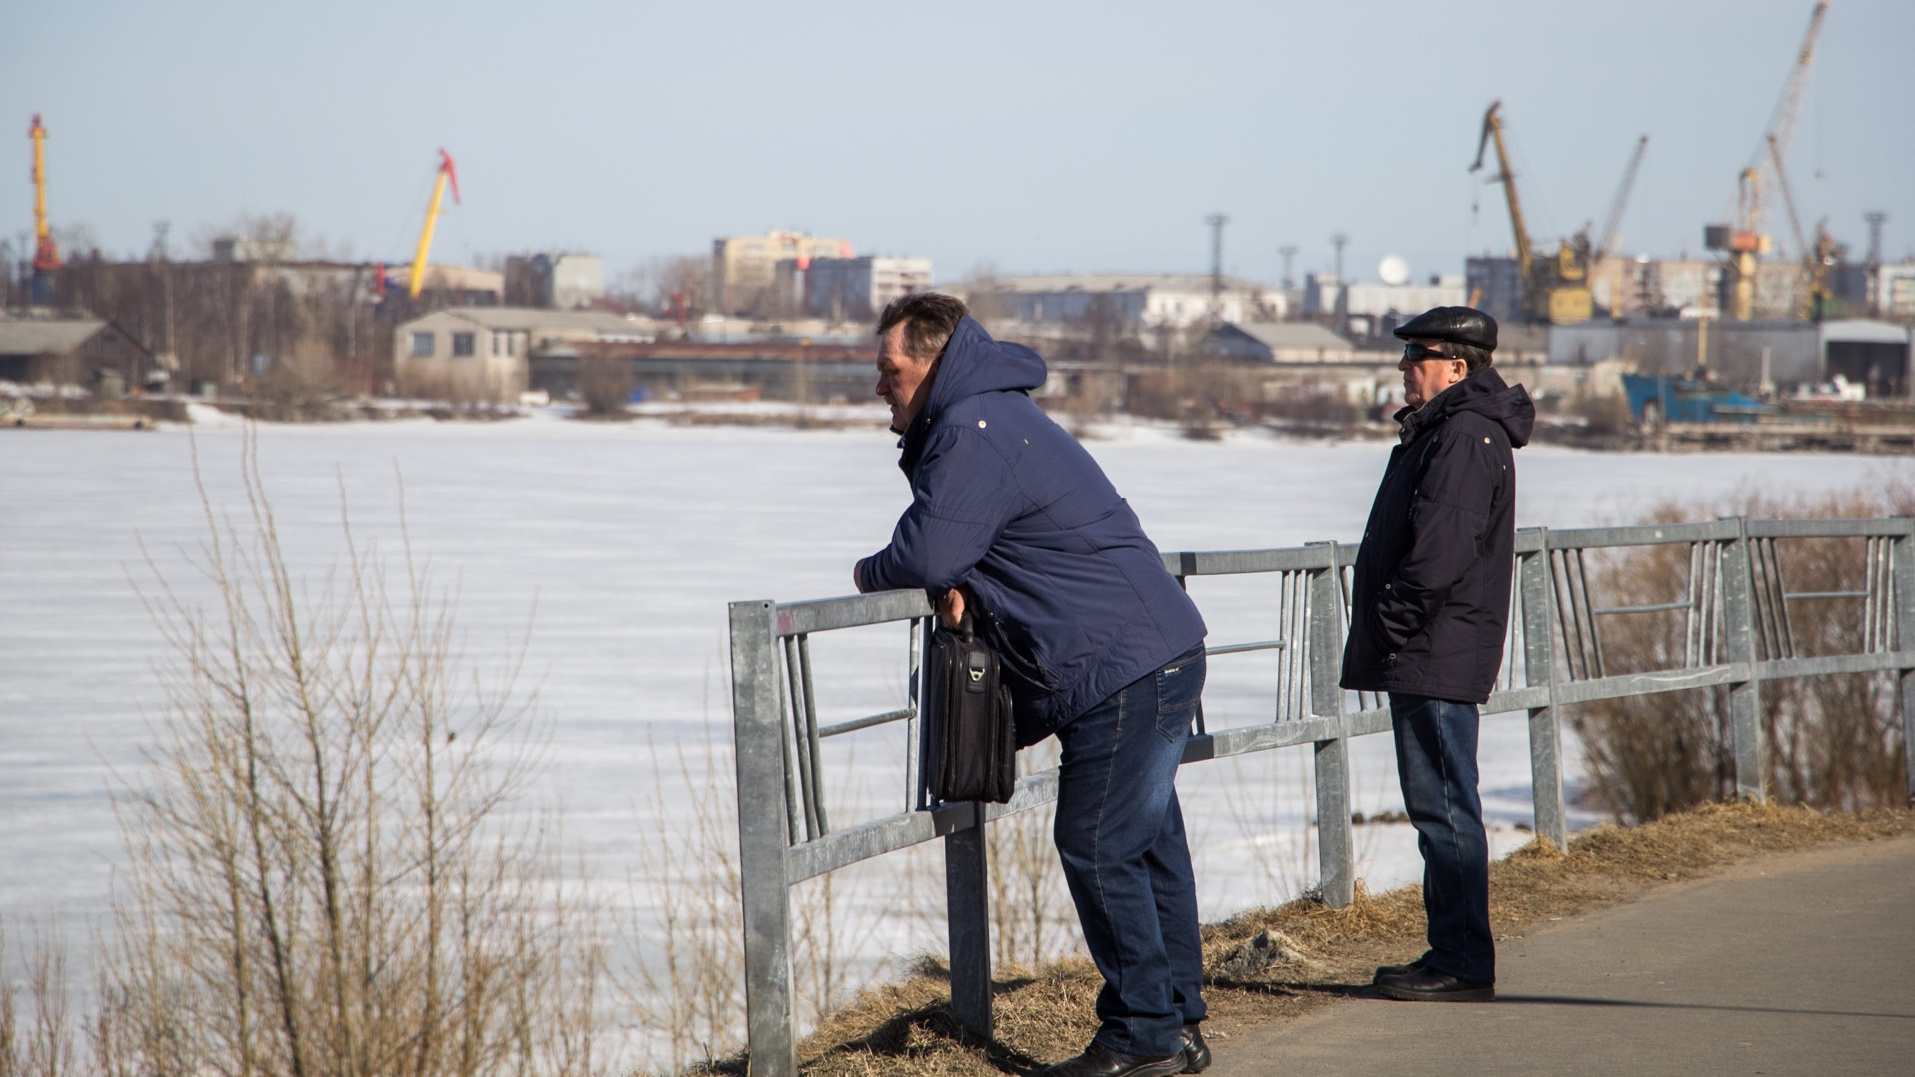 Работа архангельск 29 ру последние. Город в котором хочется жить Архангельск. Картинки парень с набережной смотрит на воду.